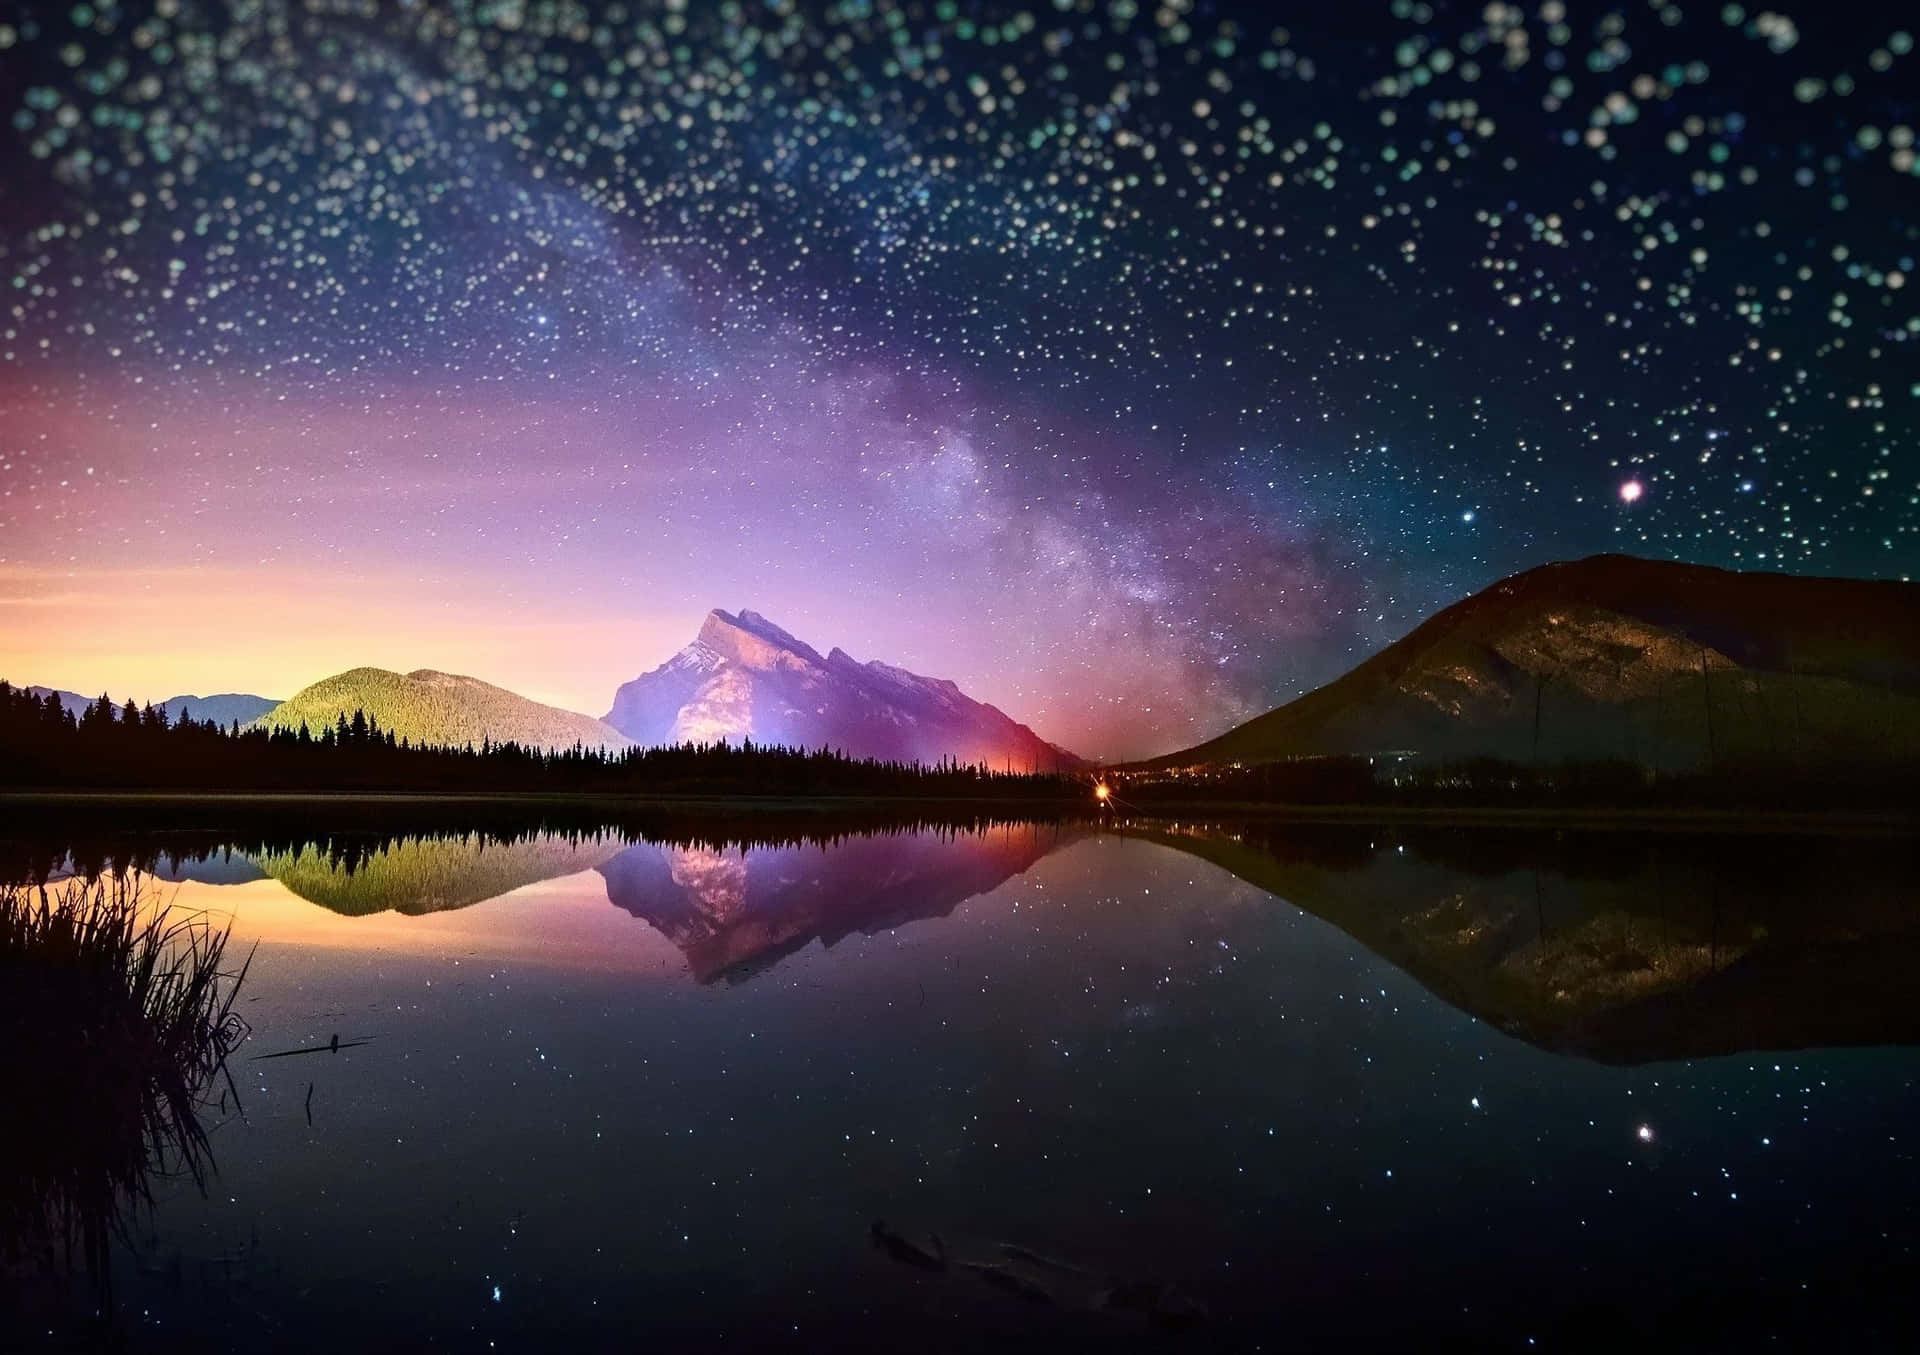 Fondosde Pantalla Hd De Noche Con Un Hermoso Lago Y Montañas Fondo de pantalla